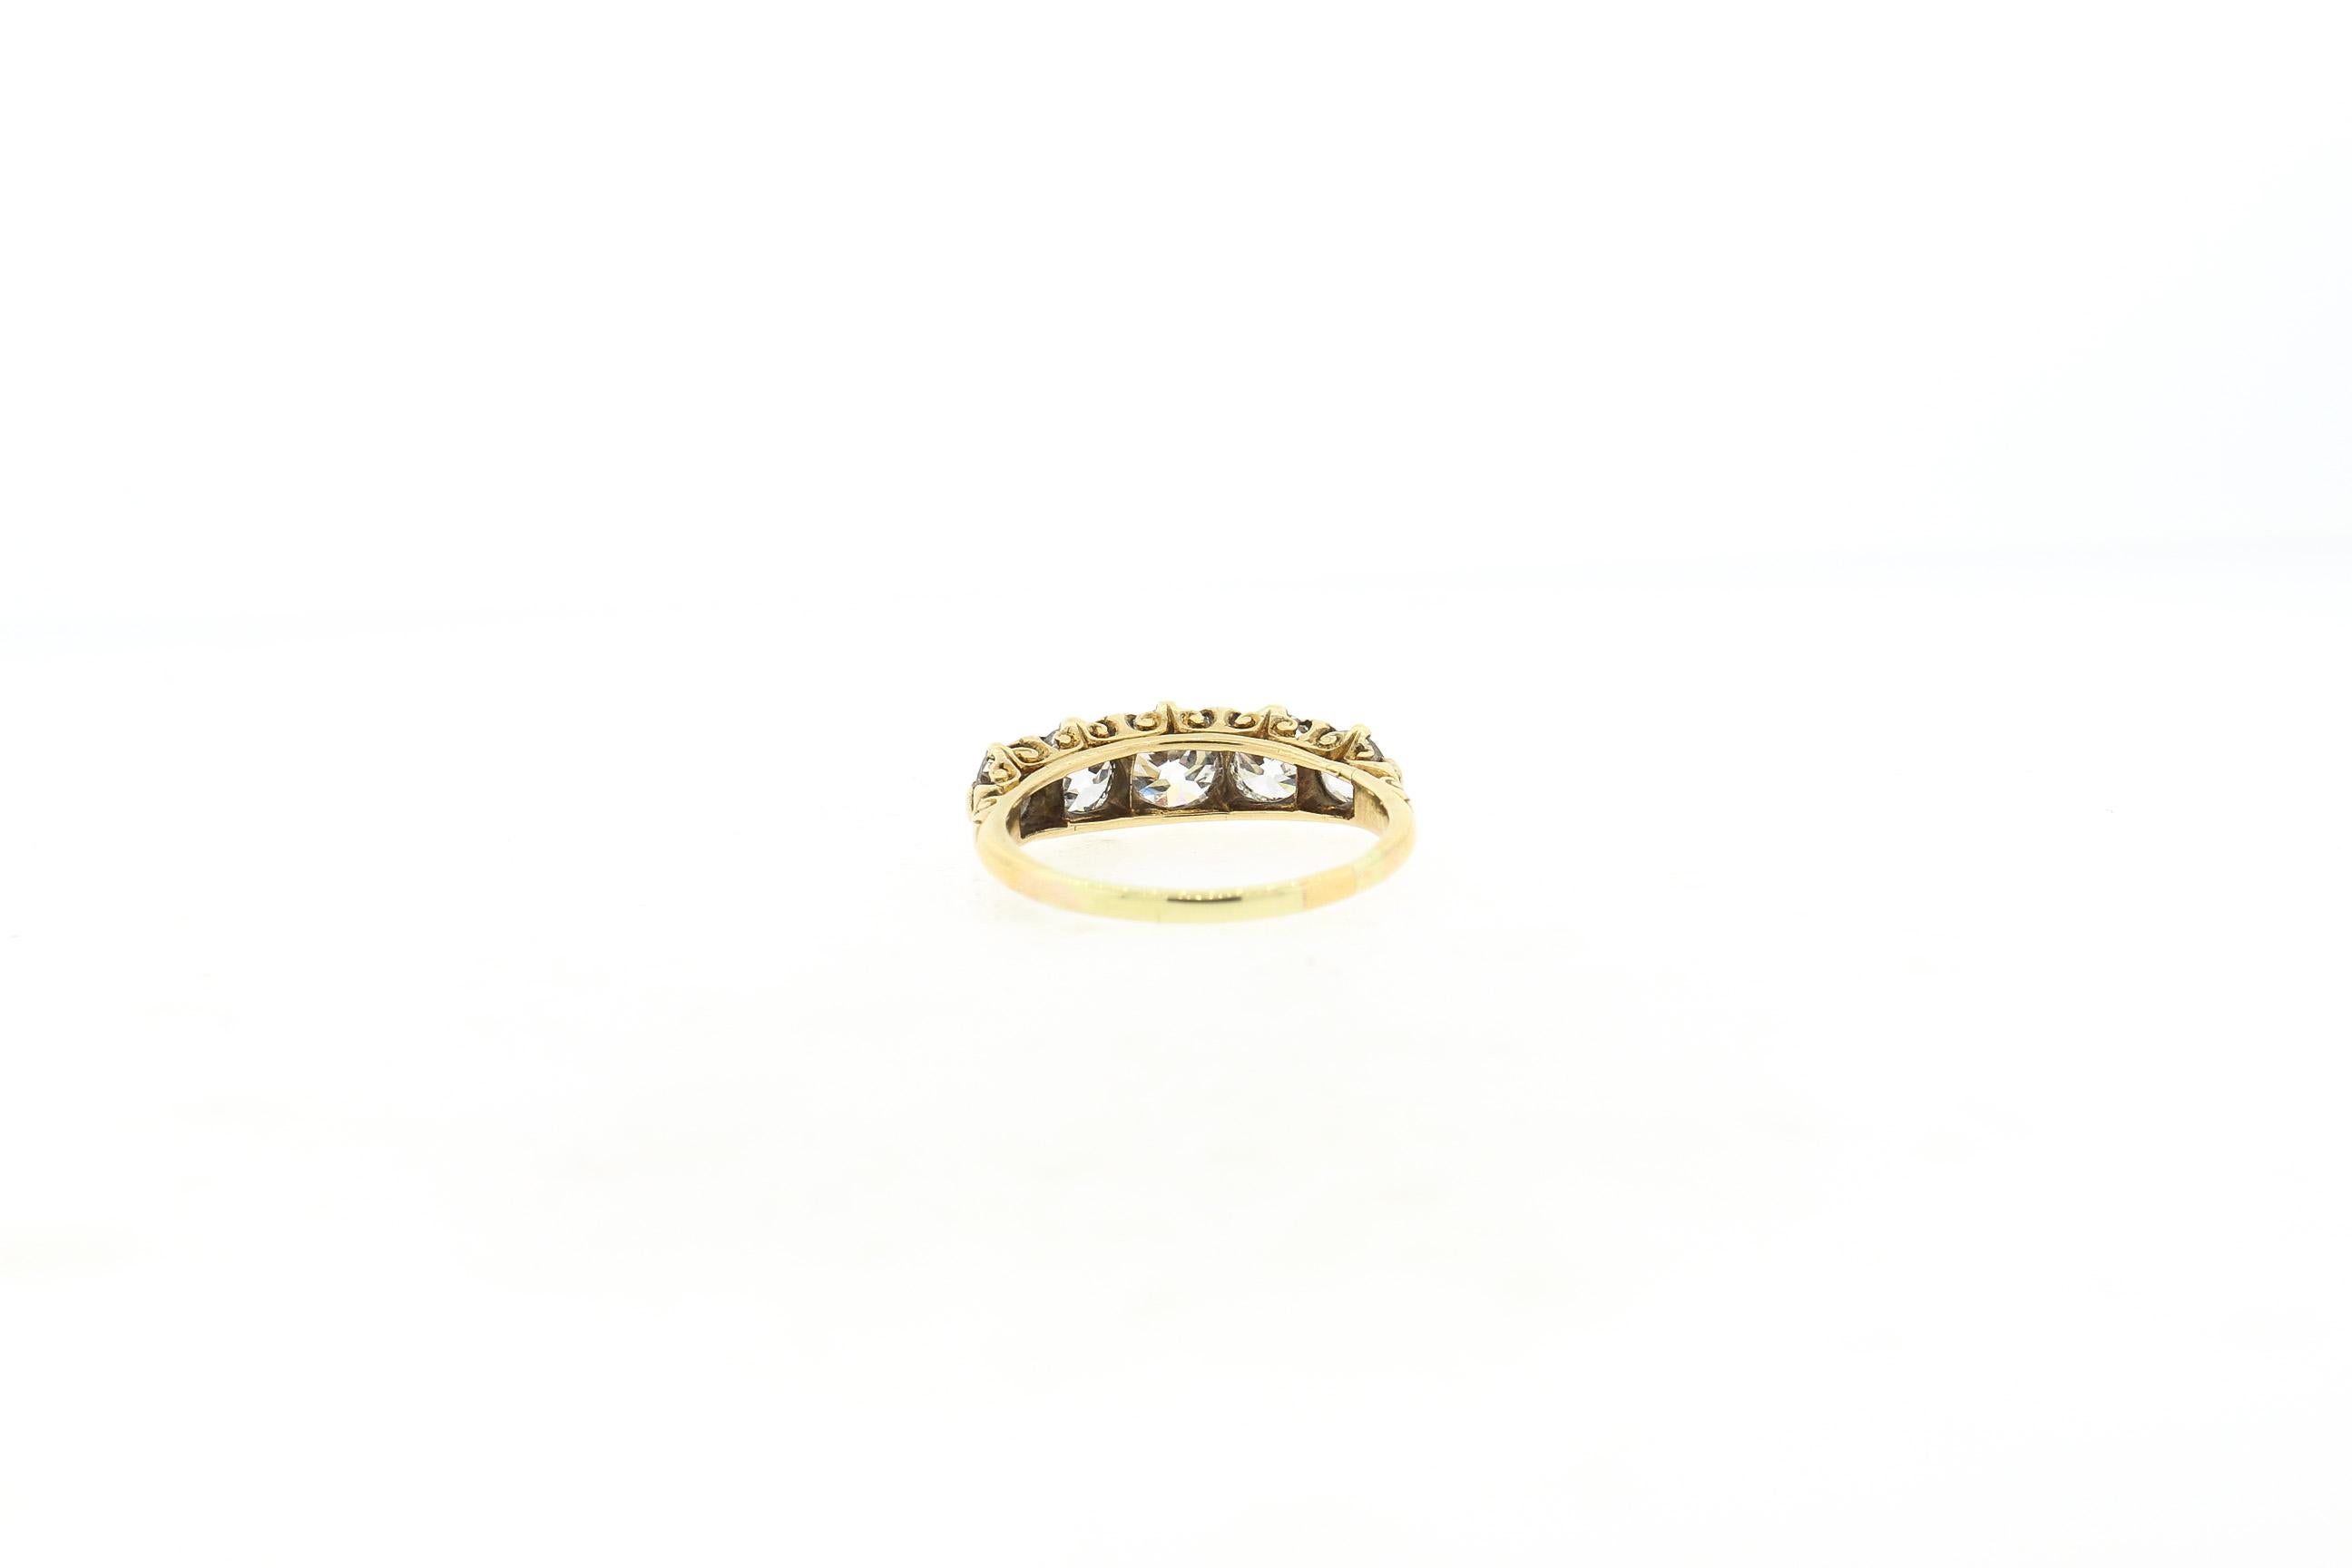 Bague victorienne ancienne à cinq pierres en or jaune 18 carats, vers 1880. L'anneau est serti de cinq diamants de taille Vieille Europe, et accentué par de petits diamants en rosace. Le poids total des diamants est d'environ 2,30 carats. Les